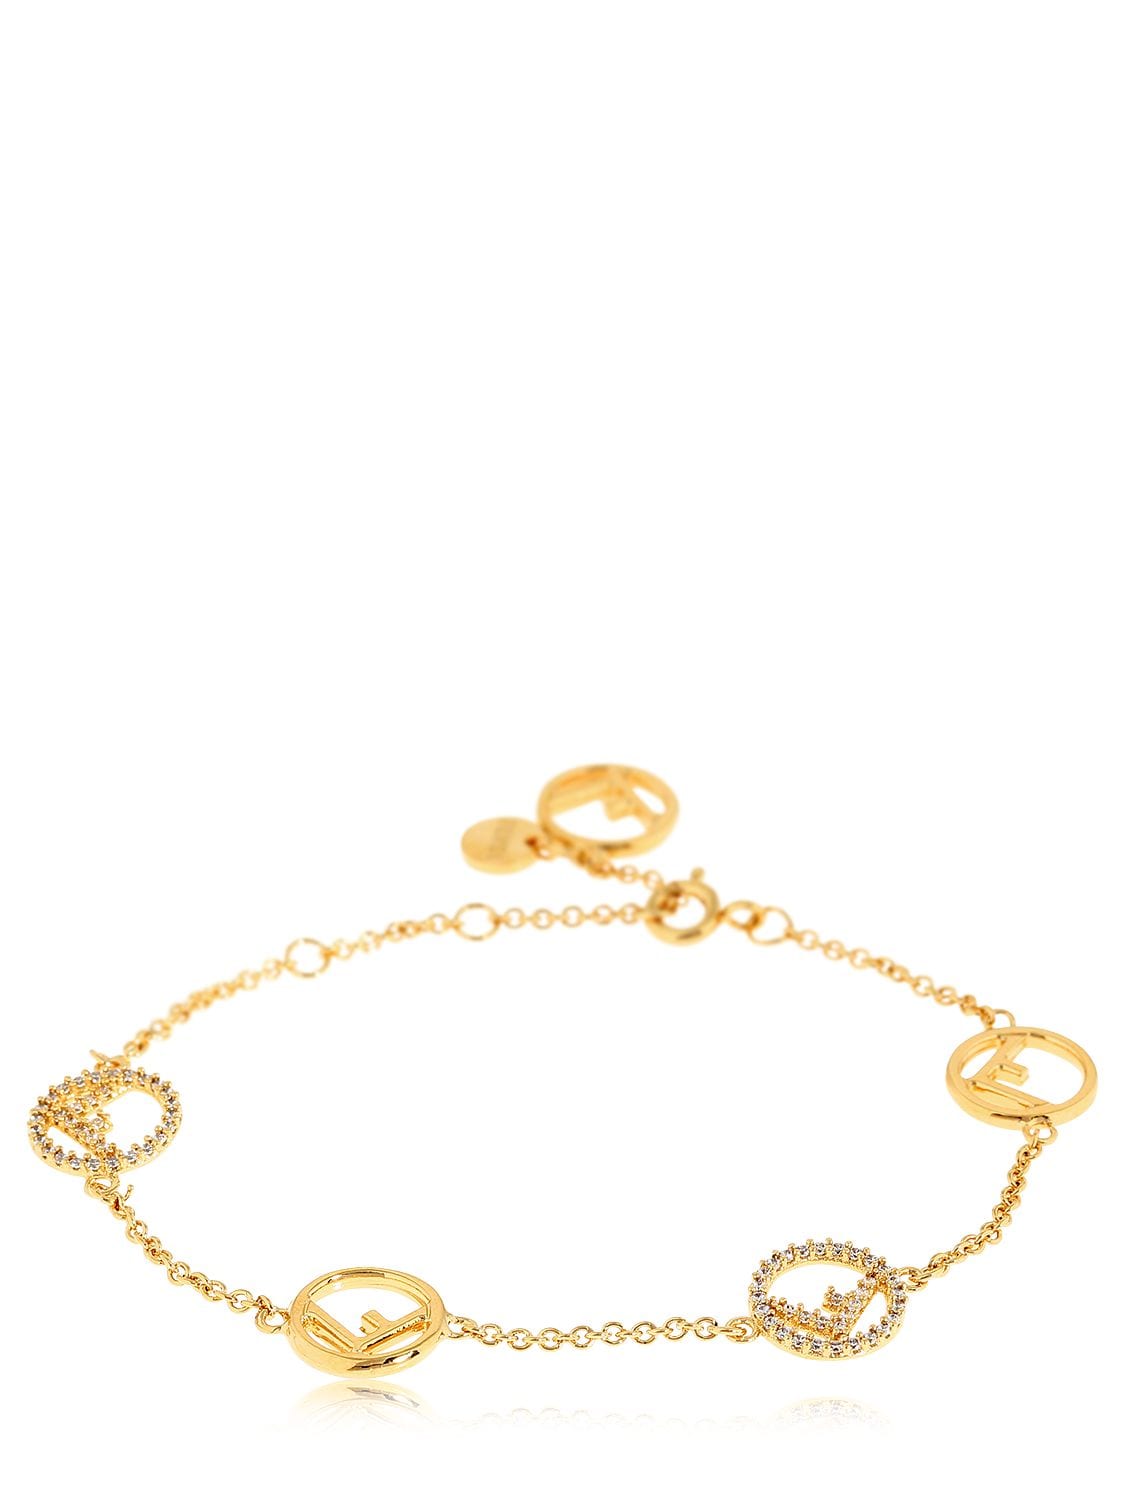 Gold Fendi Logo - Fendi Logo Charms Bracelet In Gold/Crystal | ModeSens